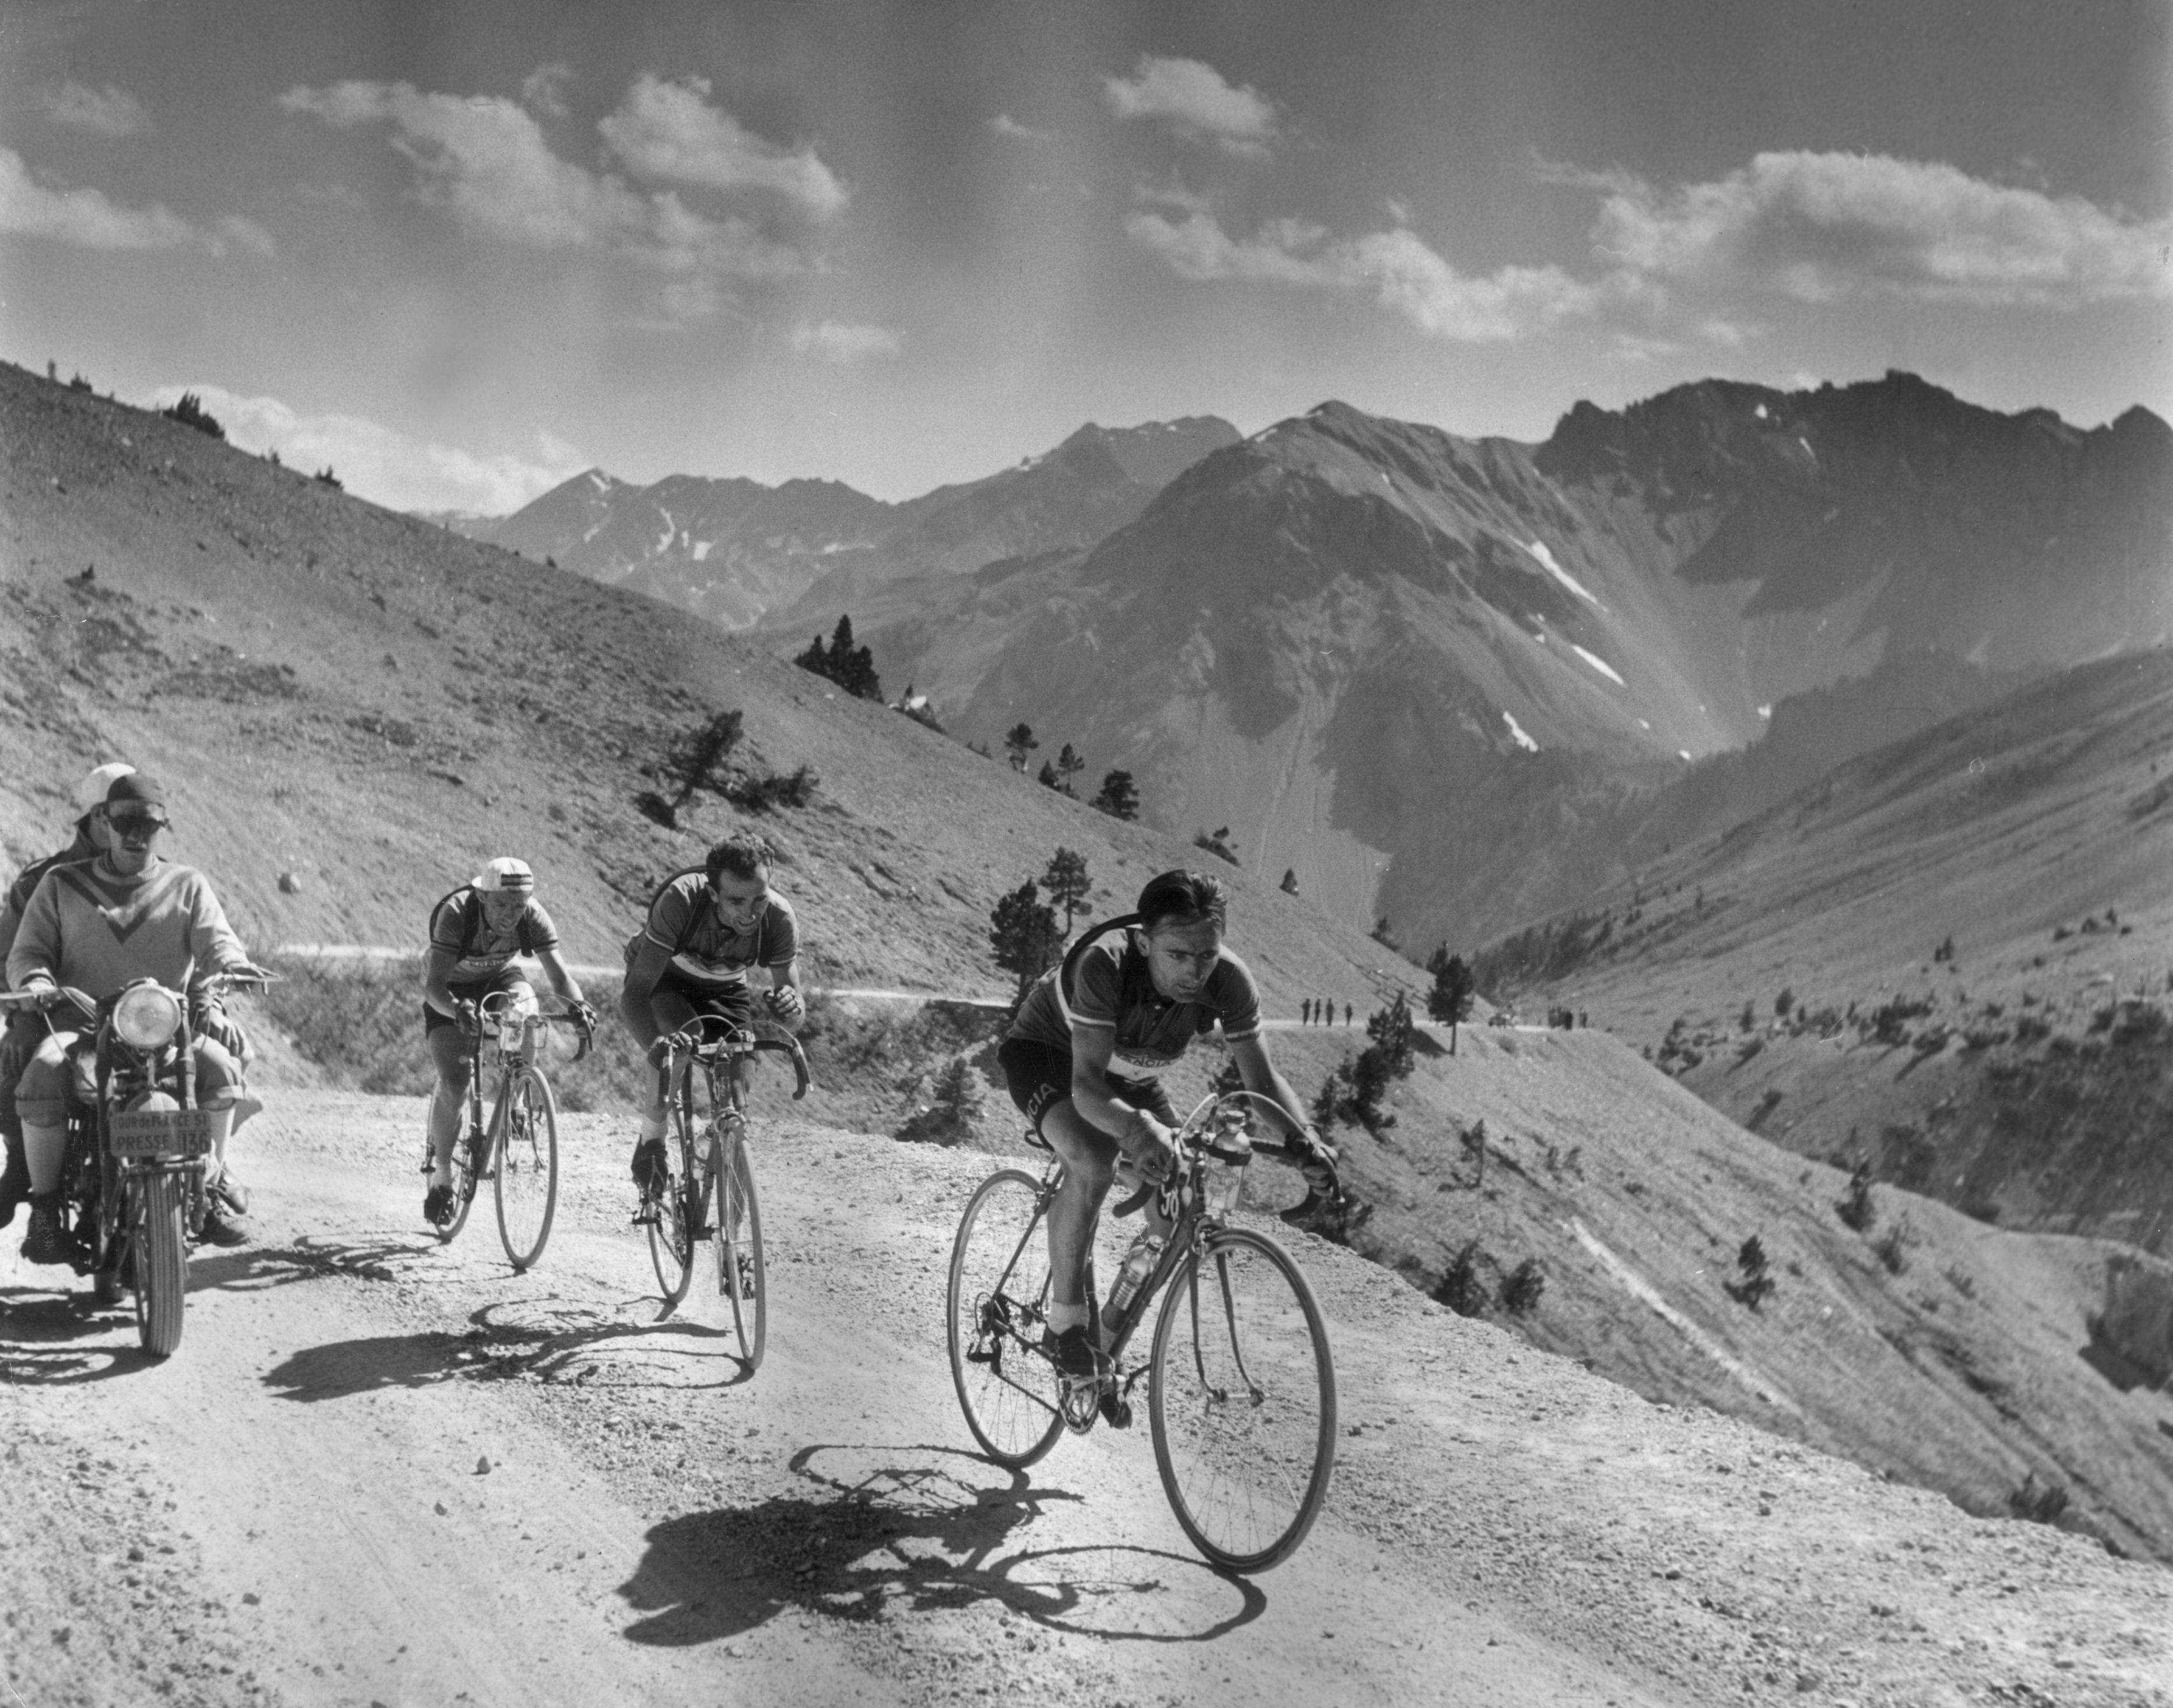 Le 18 août 1951 : Des cyclistes participant au Tour de France traversent les Alpes françaises. Publication originale : Picture Post - 5381 - Le plus grand spectacle sur terre - pub. 1951 (Picture Post/Getty Images)

En tant que partenaire agréé de